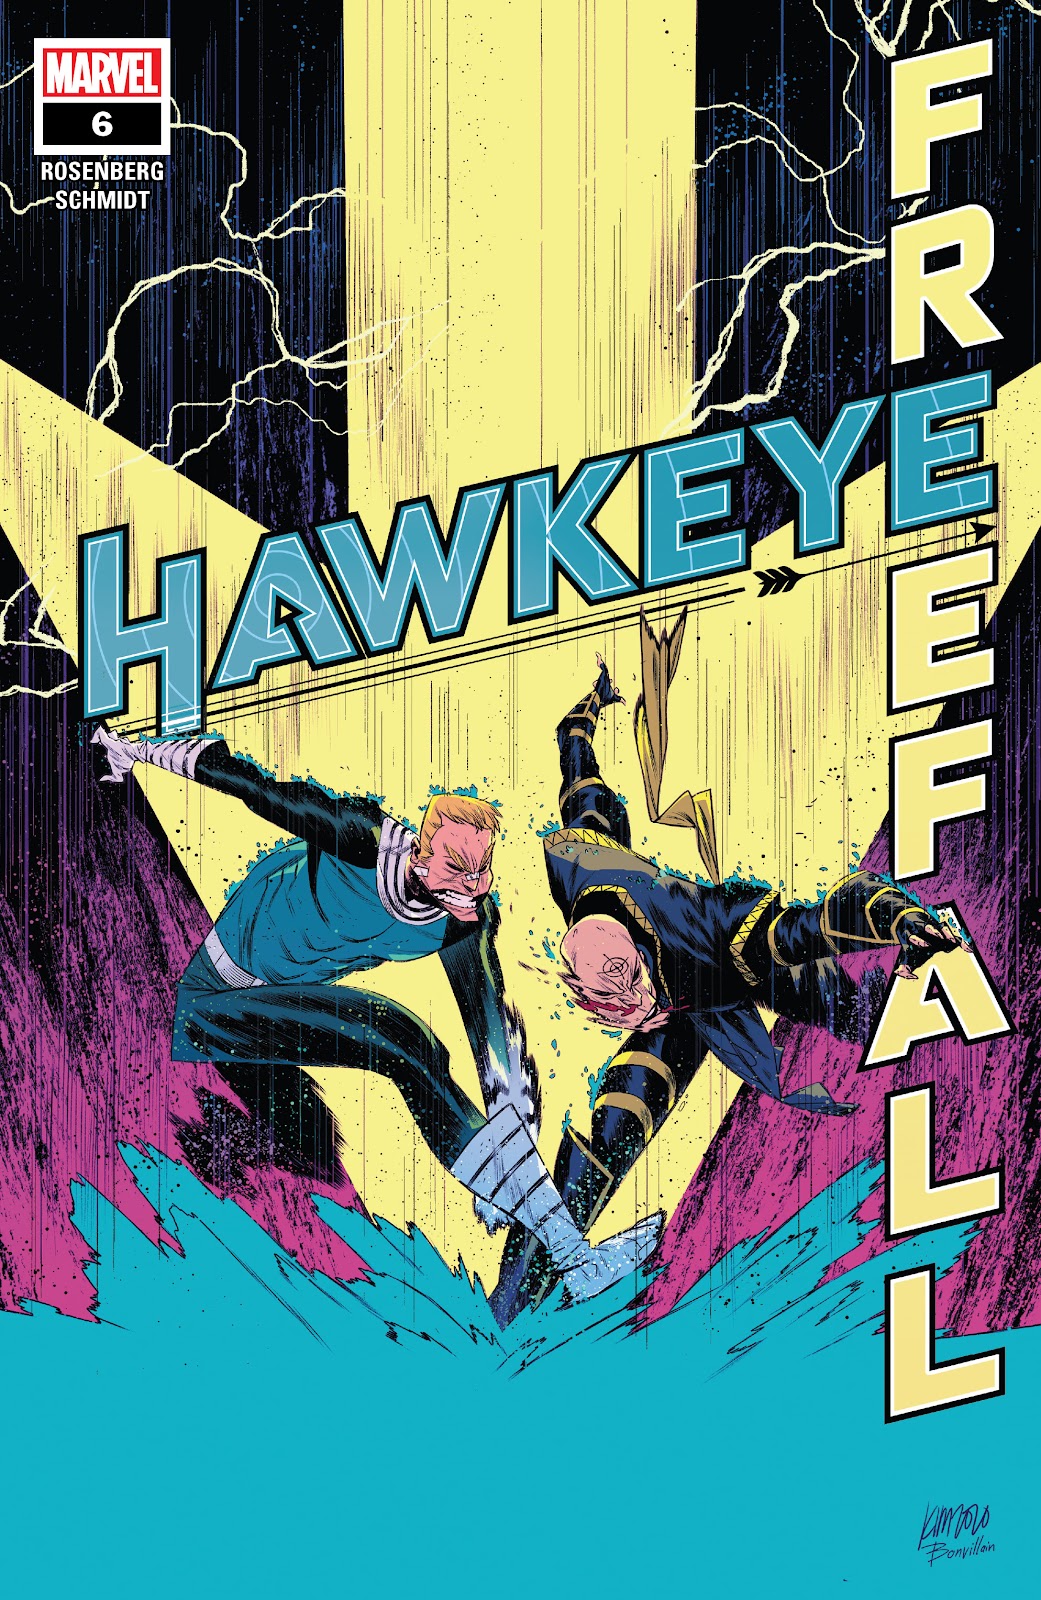 Hawkeye: Freefall issue 6 - Page 1